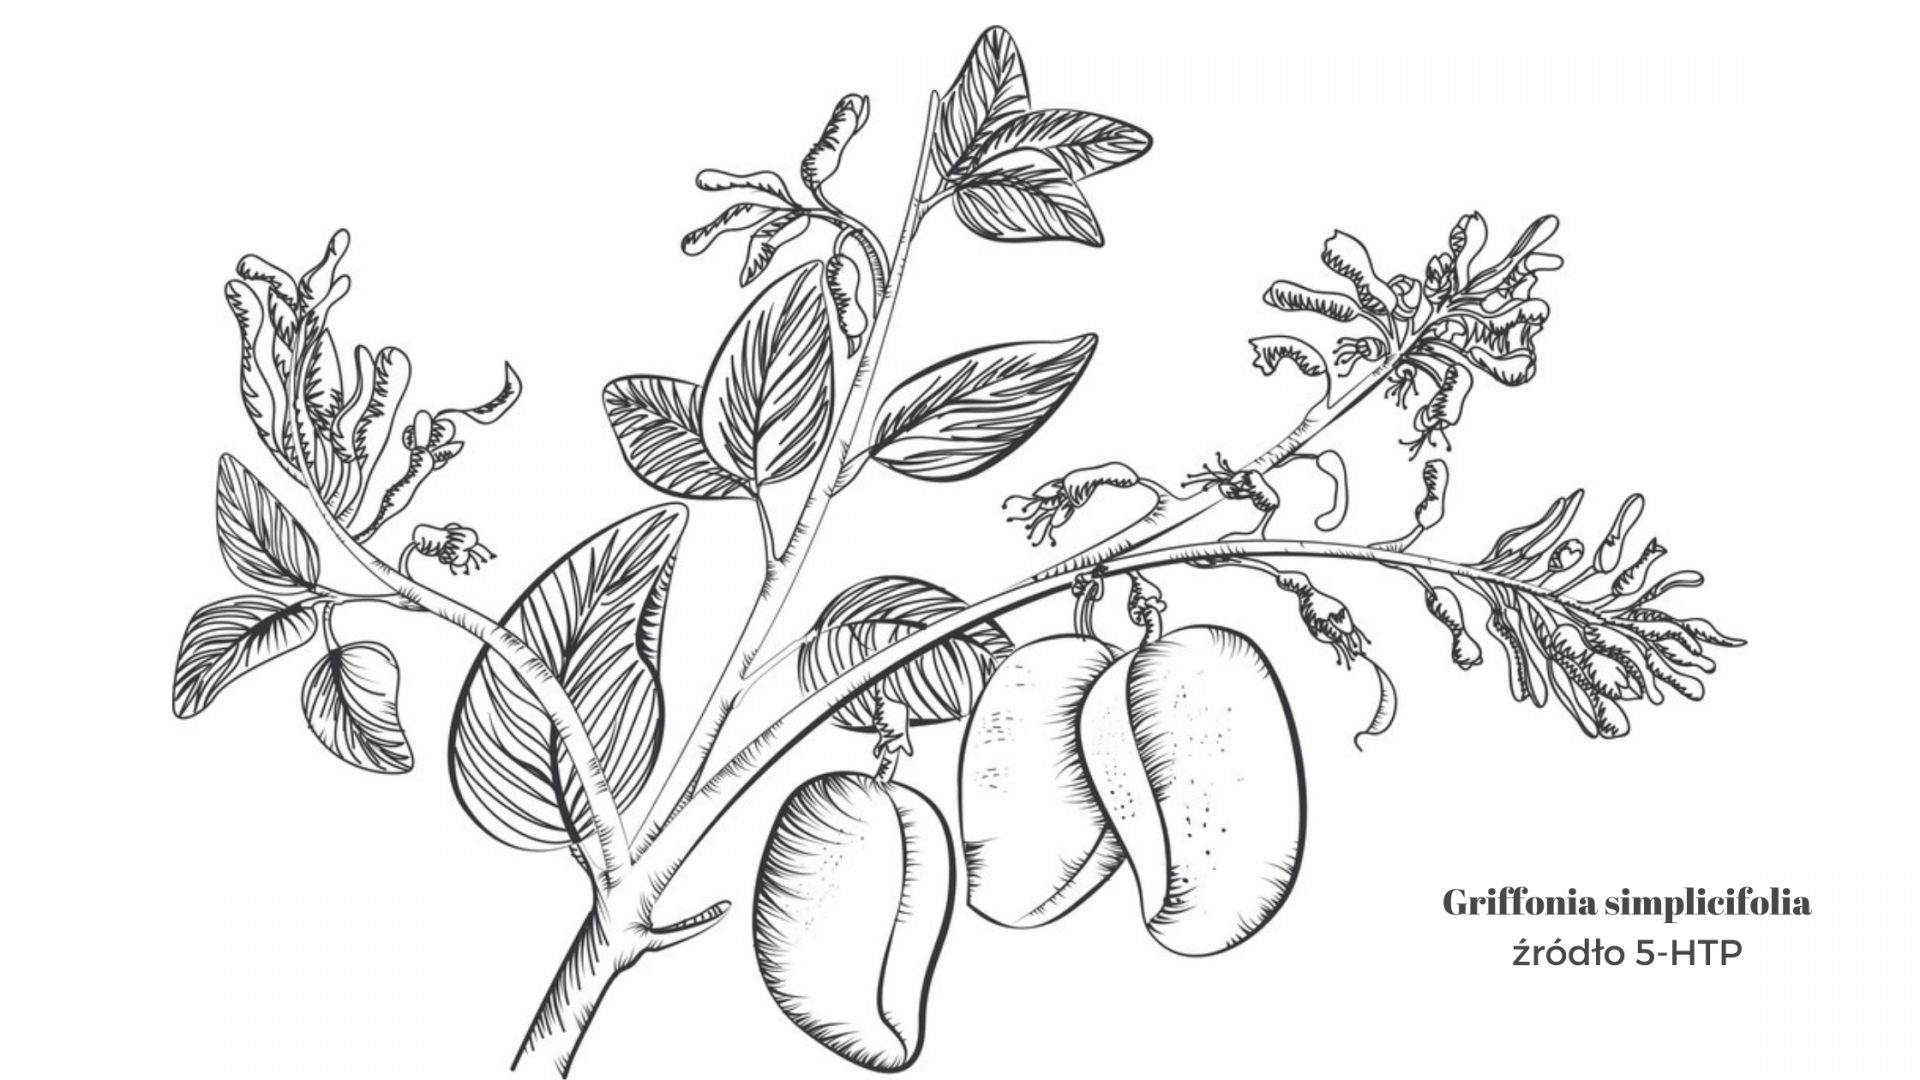 Rusunek przedstwaijący Griffonia simplicifolia źródło 5-HTP. Na rysunku czarno białym są narysowane gałązki i liście oraz owoce rośliny